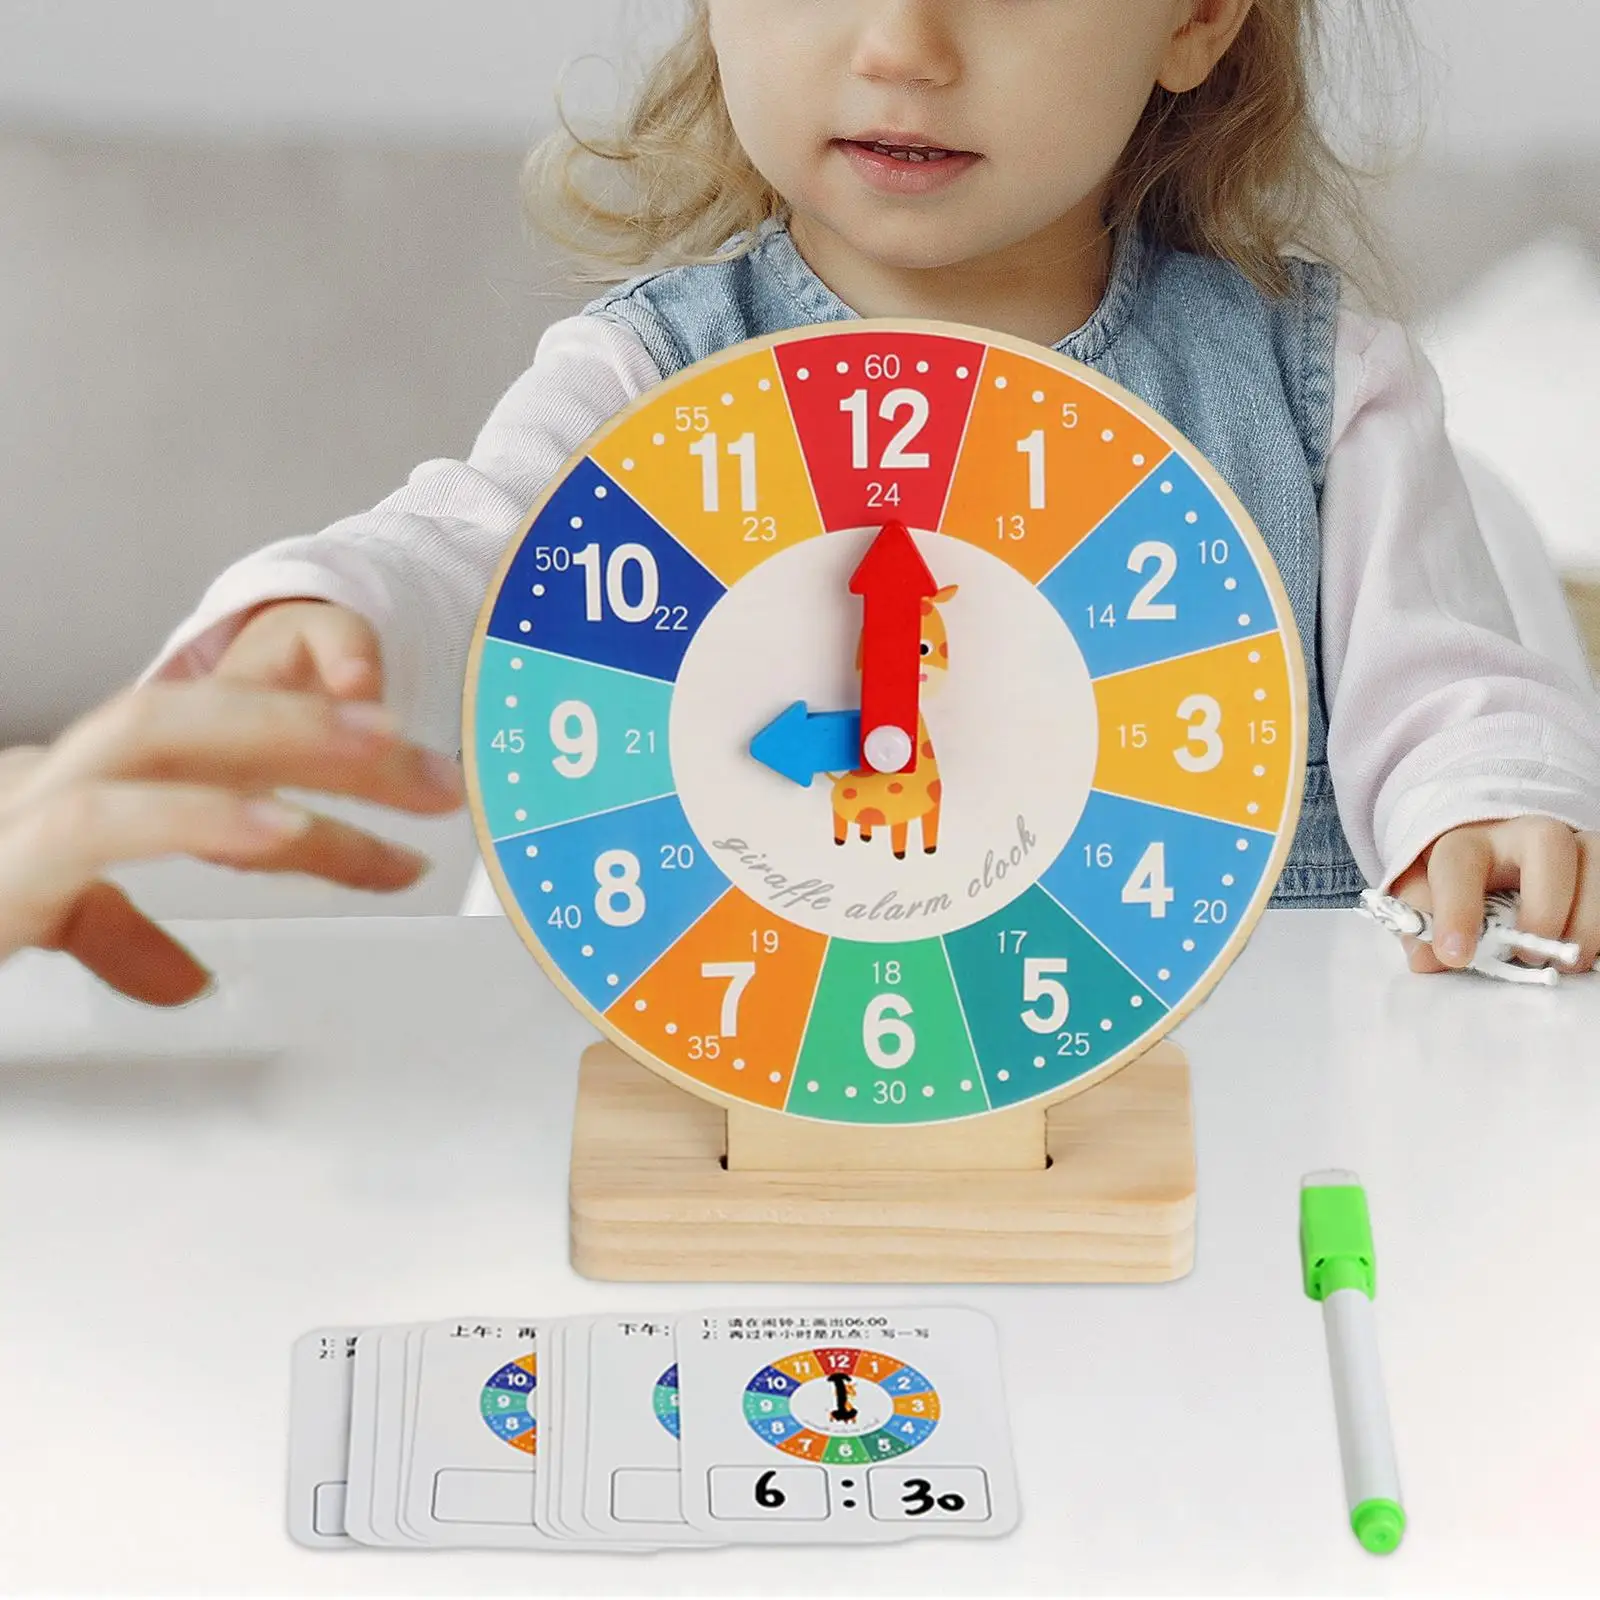 Sensory Toy Teaching Clocks for Kids for Kindergartner Teaching Aids Baby